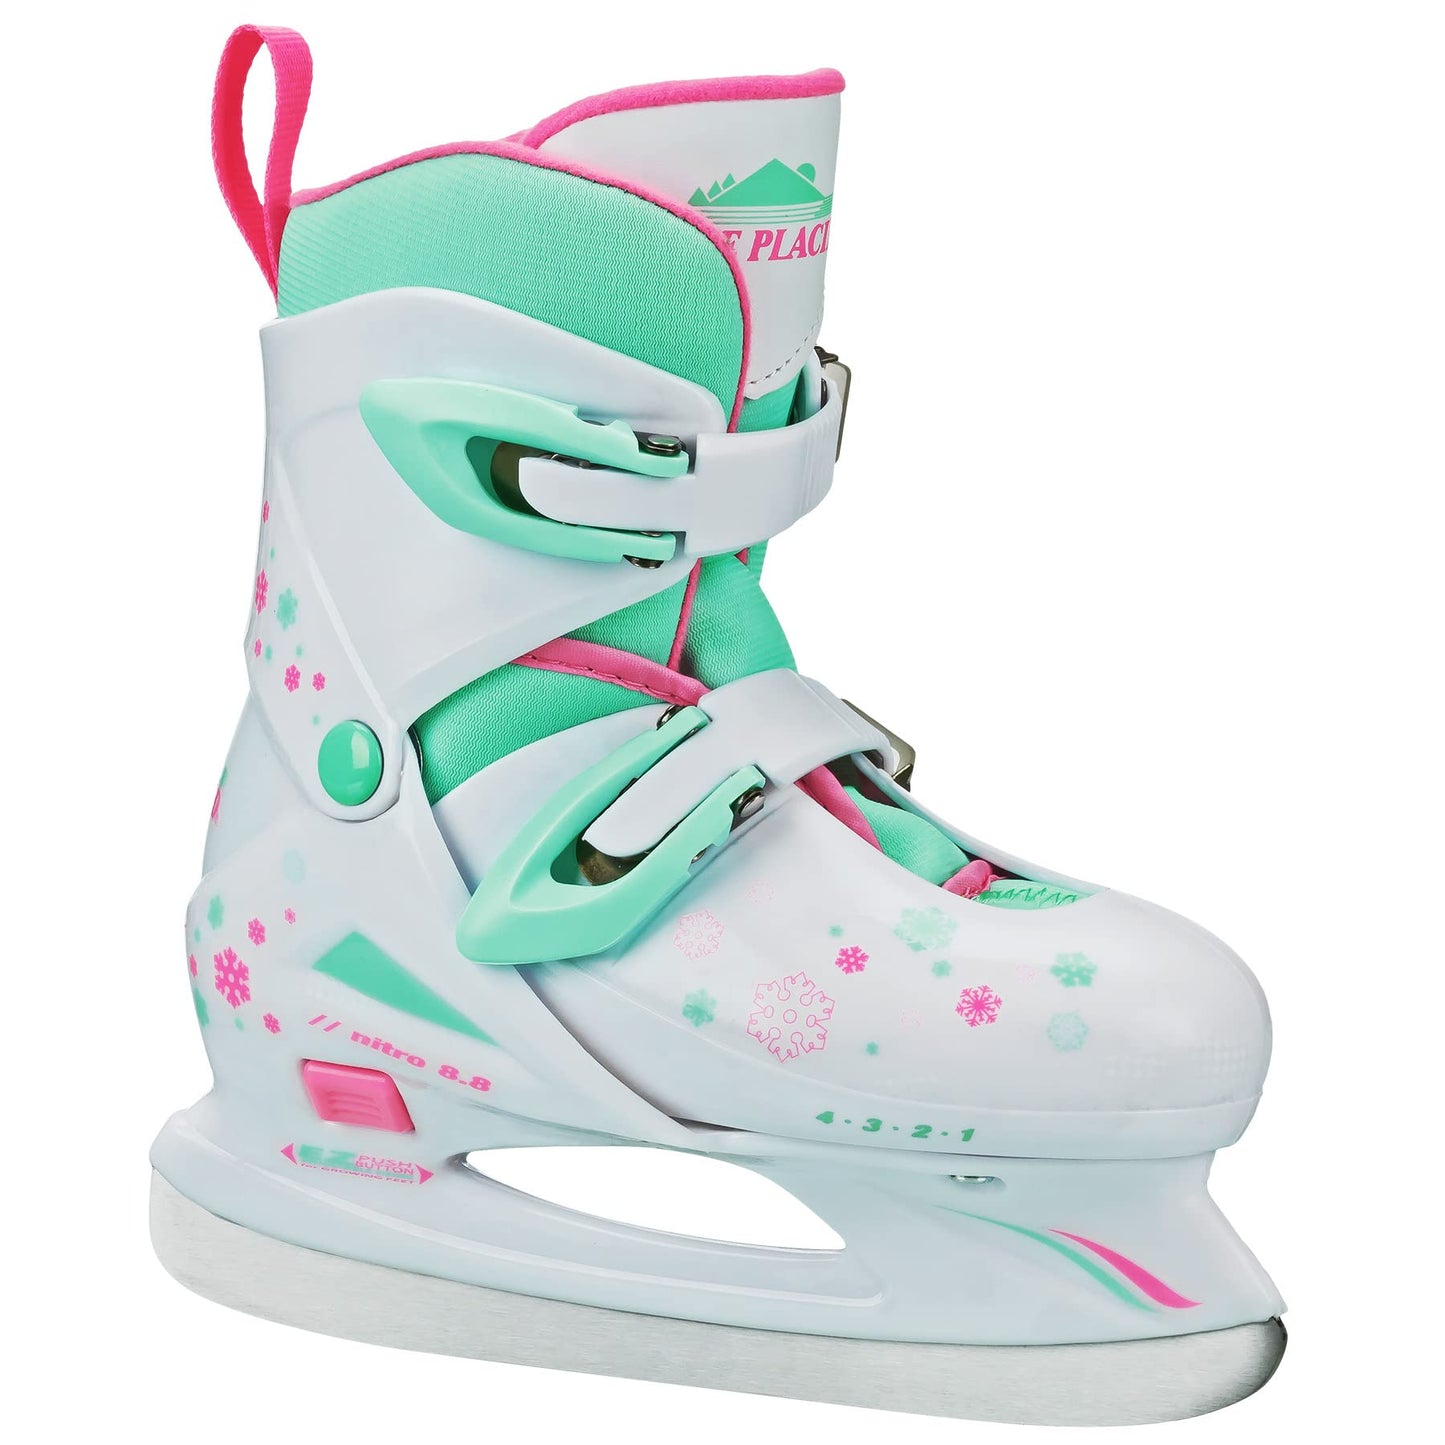 Lake Placid Girls Nitro 8.8 Adjustable Ice Skates